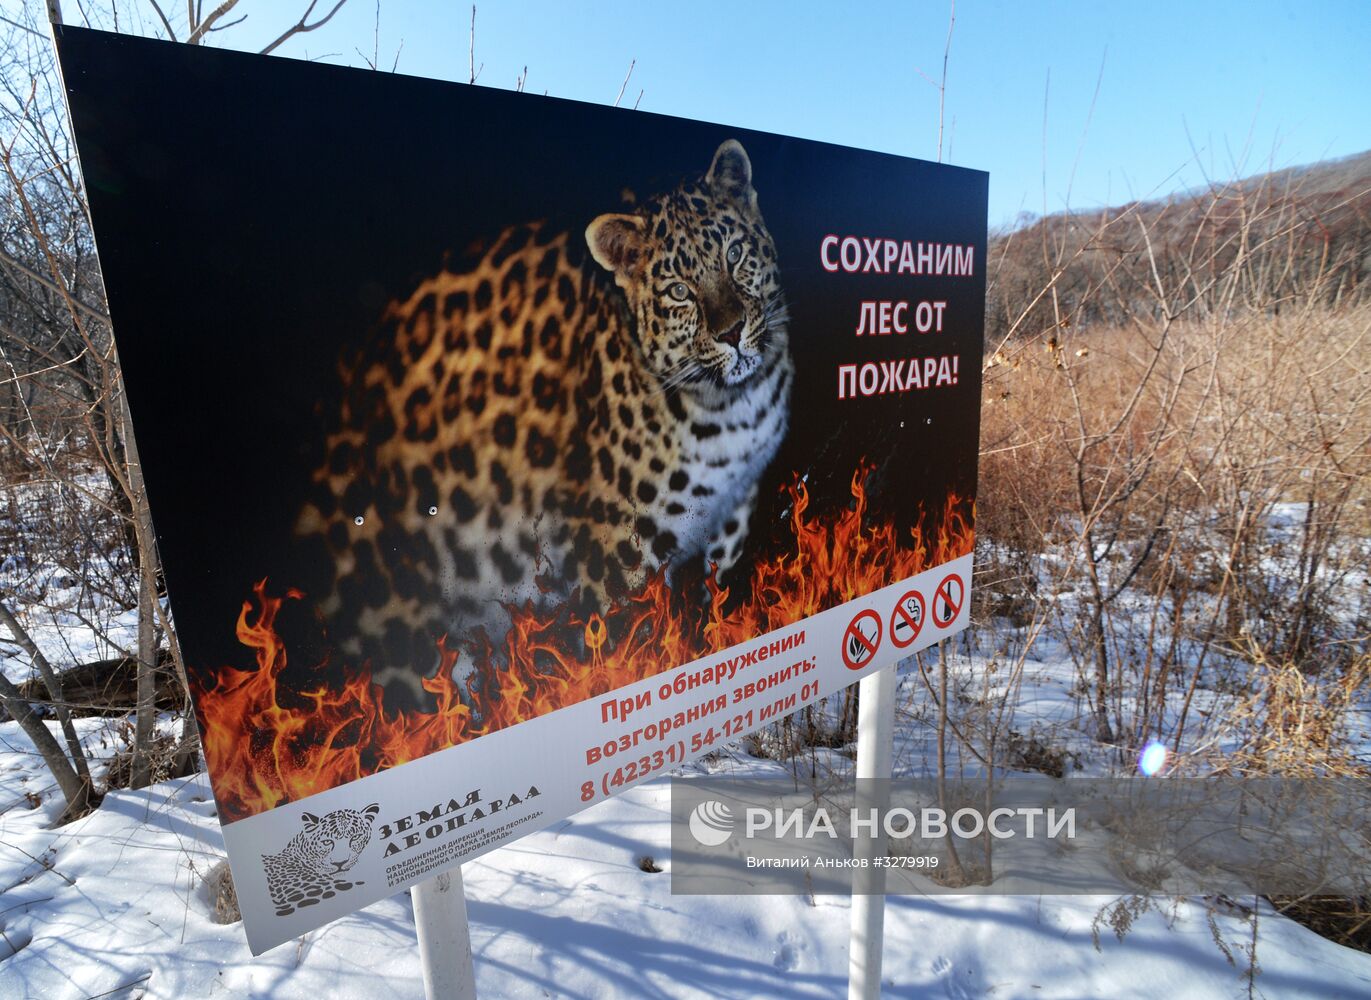 Национальный парк "Земля леопарда" в Приморье